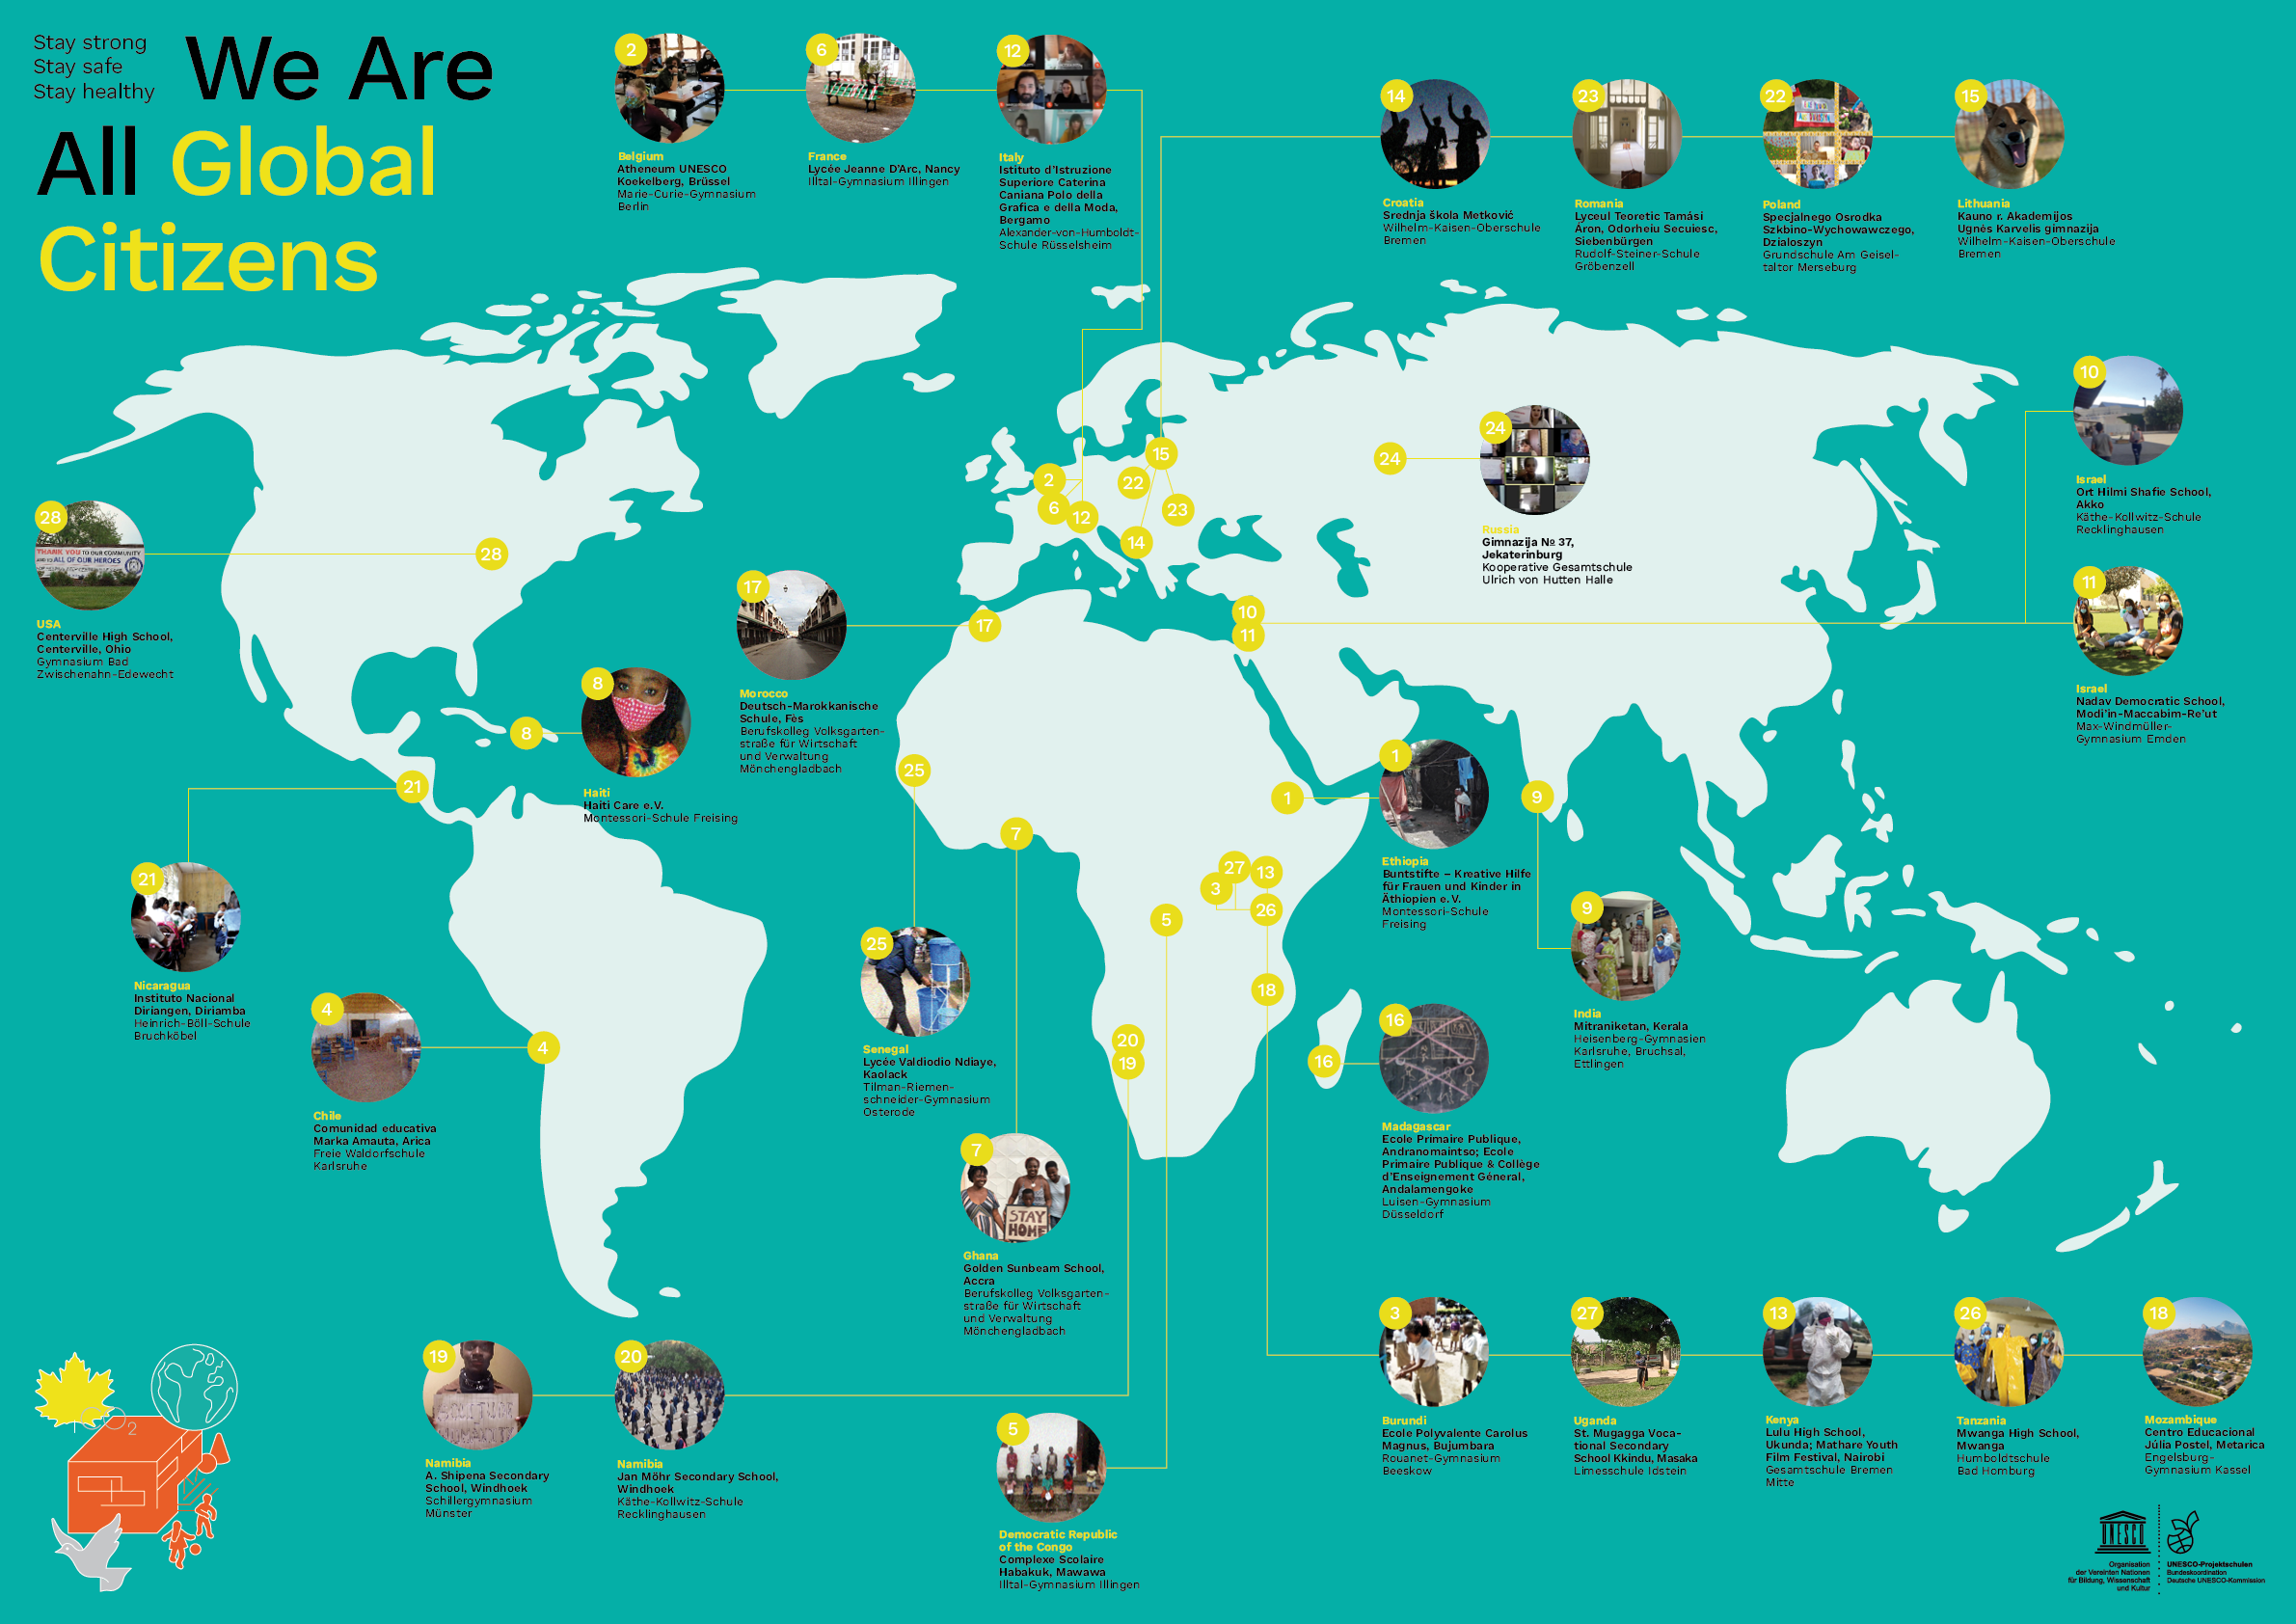 WeAreAllGlobalCitizens_2020_Weltkarte_c_Deutsche UNESCO-Kommission.png